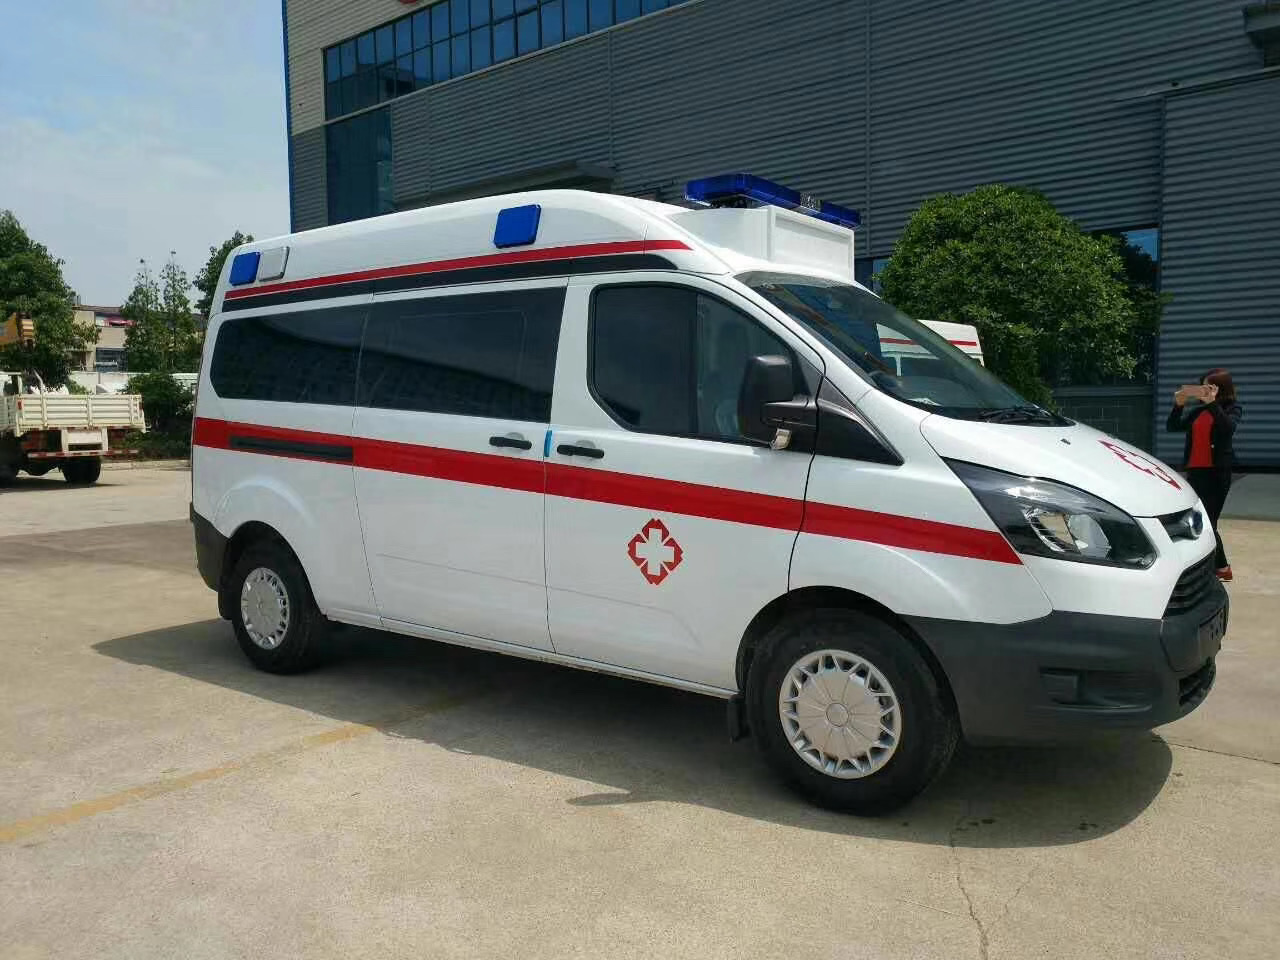 宁化县出院转院救护车